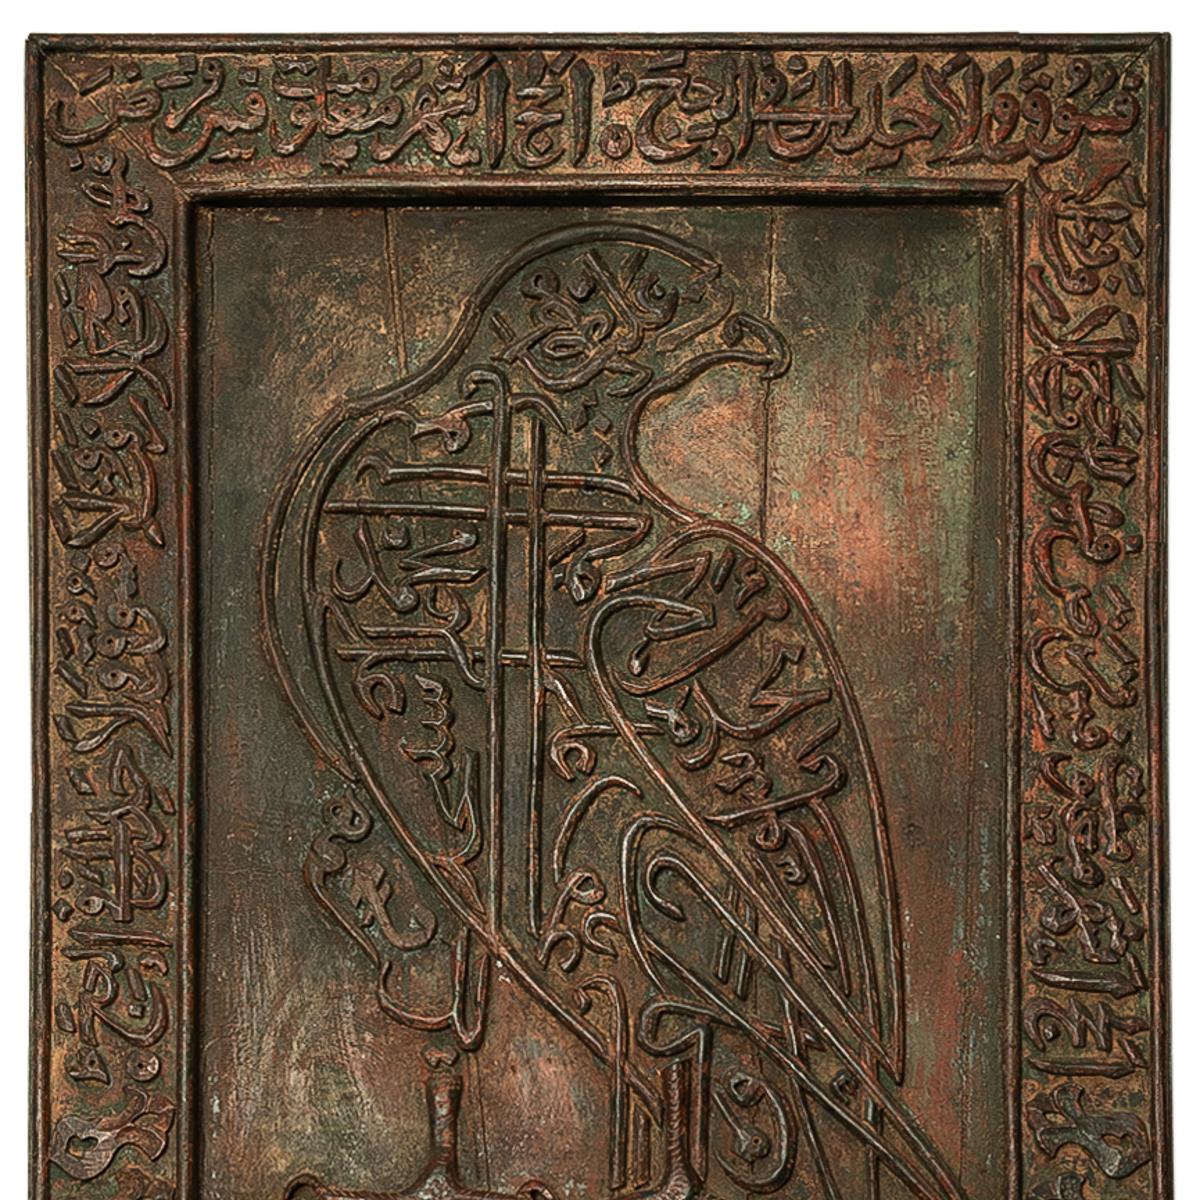 Grand et important panneau de bois islamique du milieu du XIXe siècle, décoré d'un faucon et de calligraphies coraniques, Deccan, vers 1850.
À noter qu'un panneau presque identique a été vendu chez Sotheby's Lot # 208 